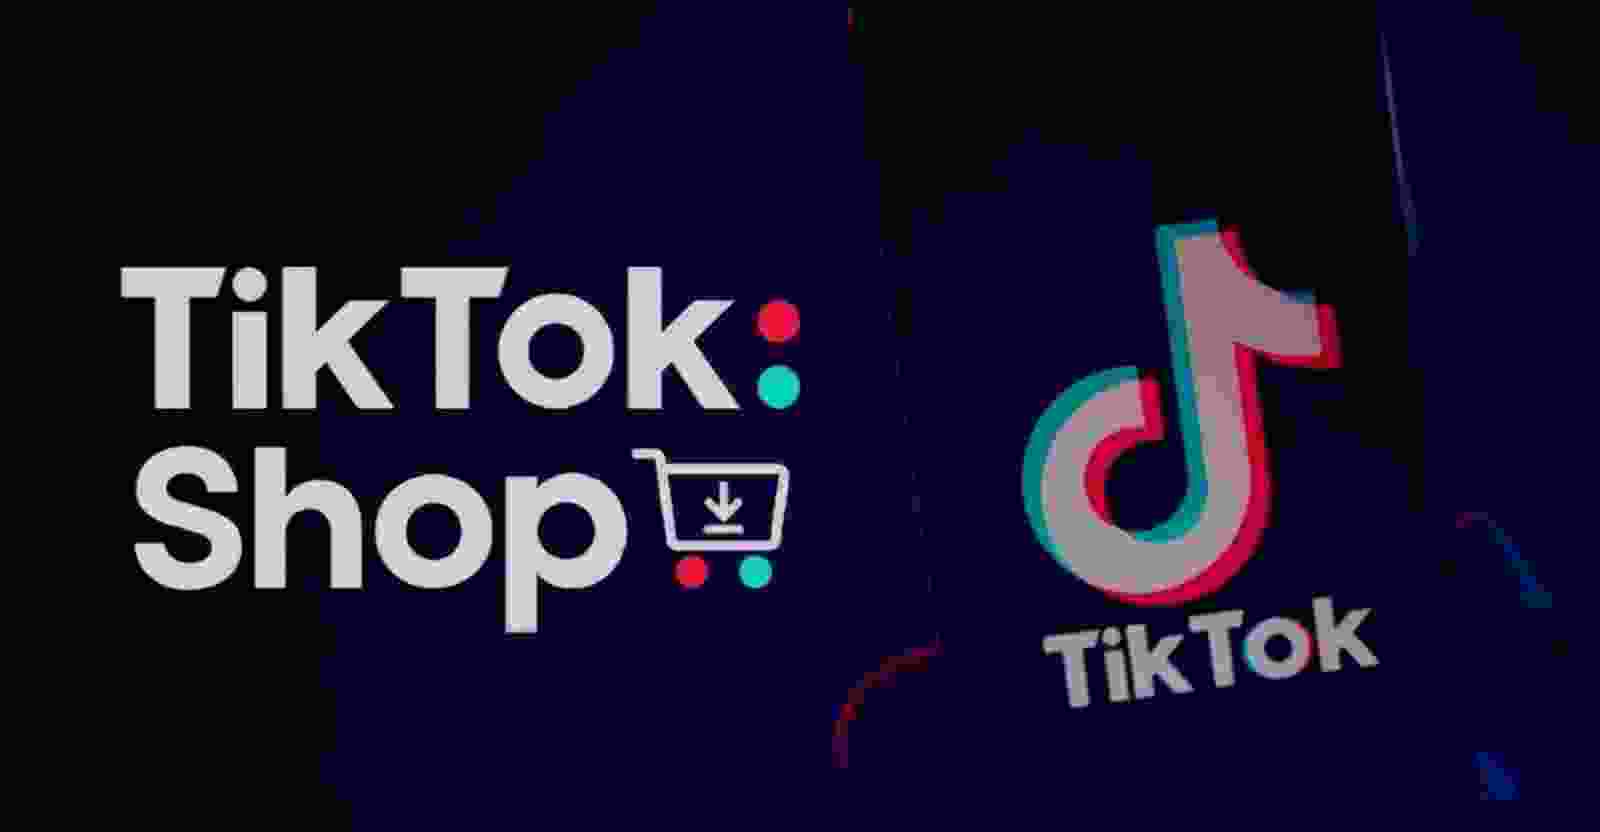 TikTok không chỉ là nơi để giải trí mà còn là một kênh bán hàng hiệu quả nhất hiện nay. Với số lượng người dùng ngày càng tăng, việc bán hàng trên TikTok trở nên đơn giản và tiện lợi hơn bao giờ hết. Nếu bạn là chủ của một cửa hàng trực tuyến hoặc muốn bán sản phẩm của mình trên mạng xã hội, hãy tham gia trên TikTok để tận dụng công cụ tuyệt vời này.